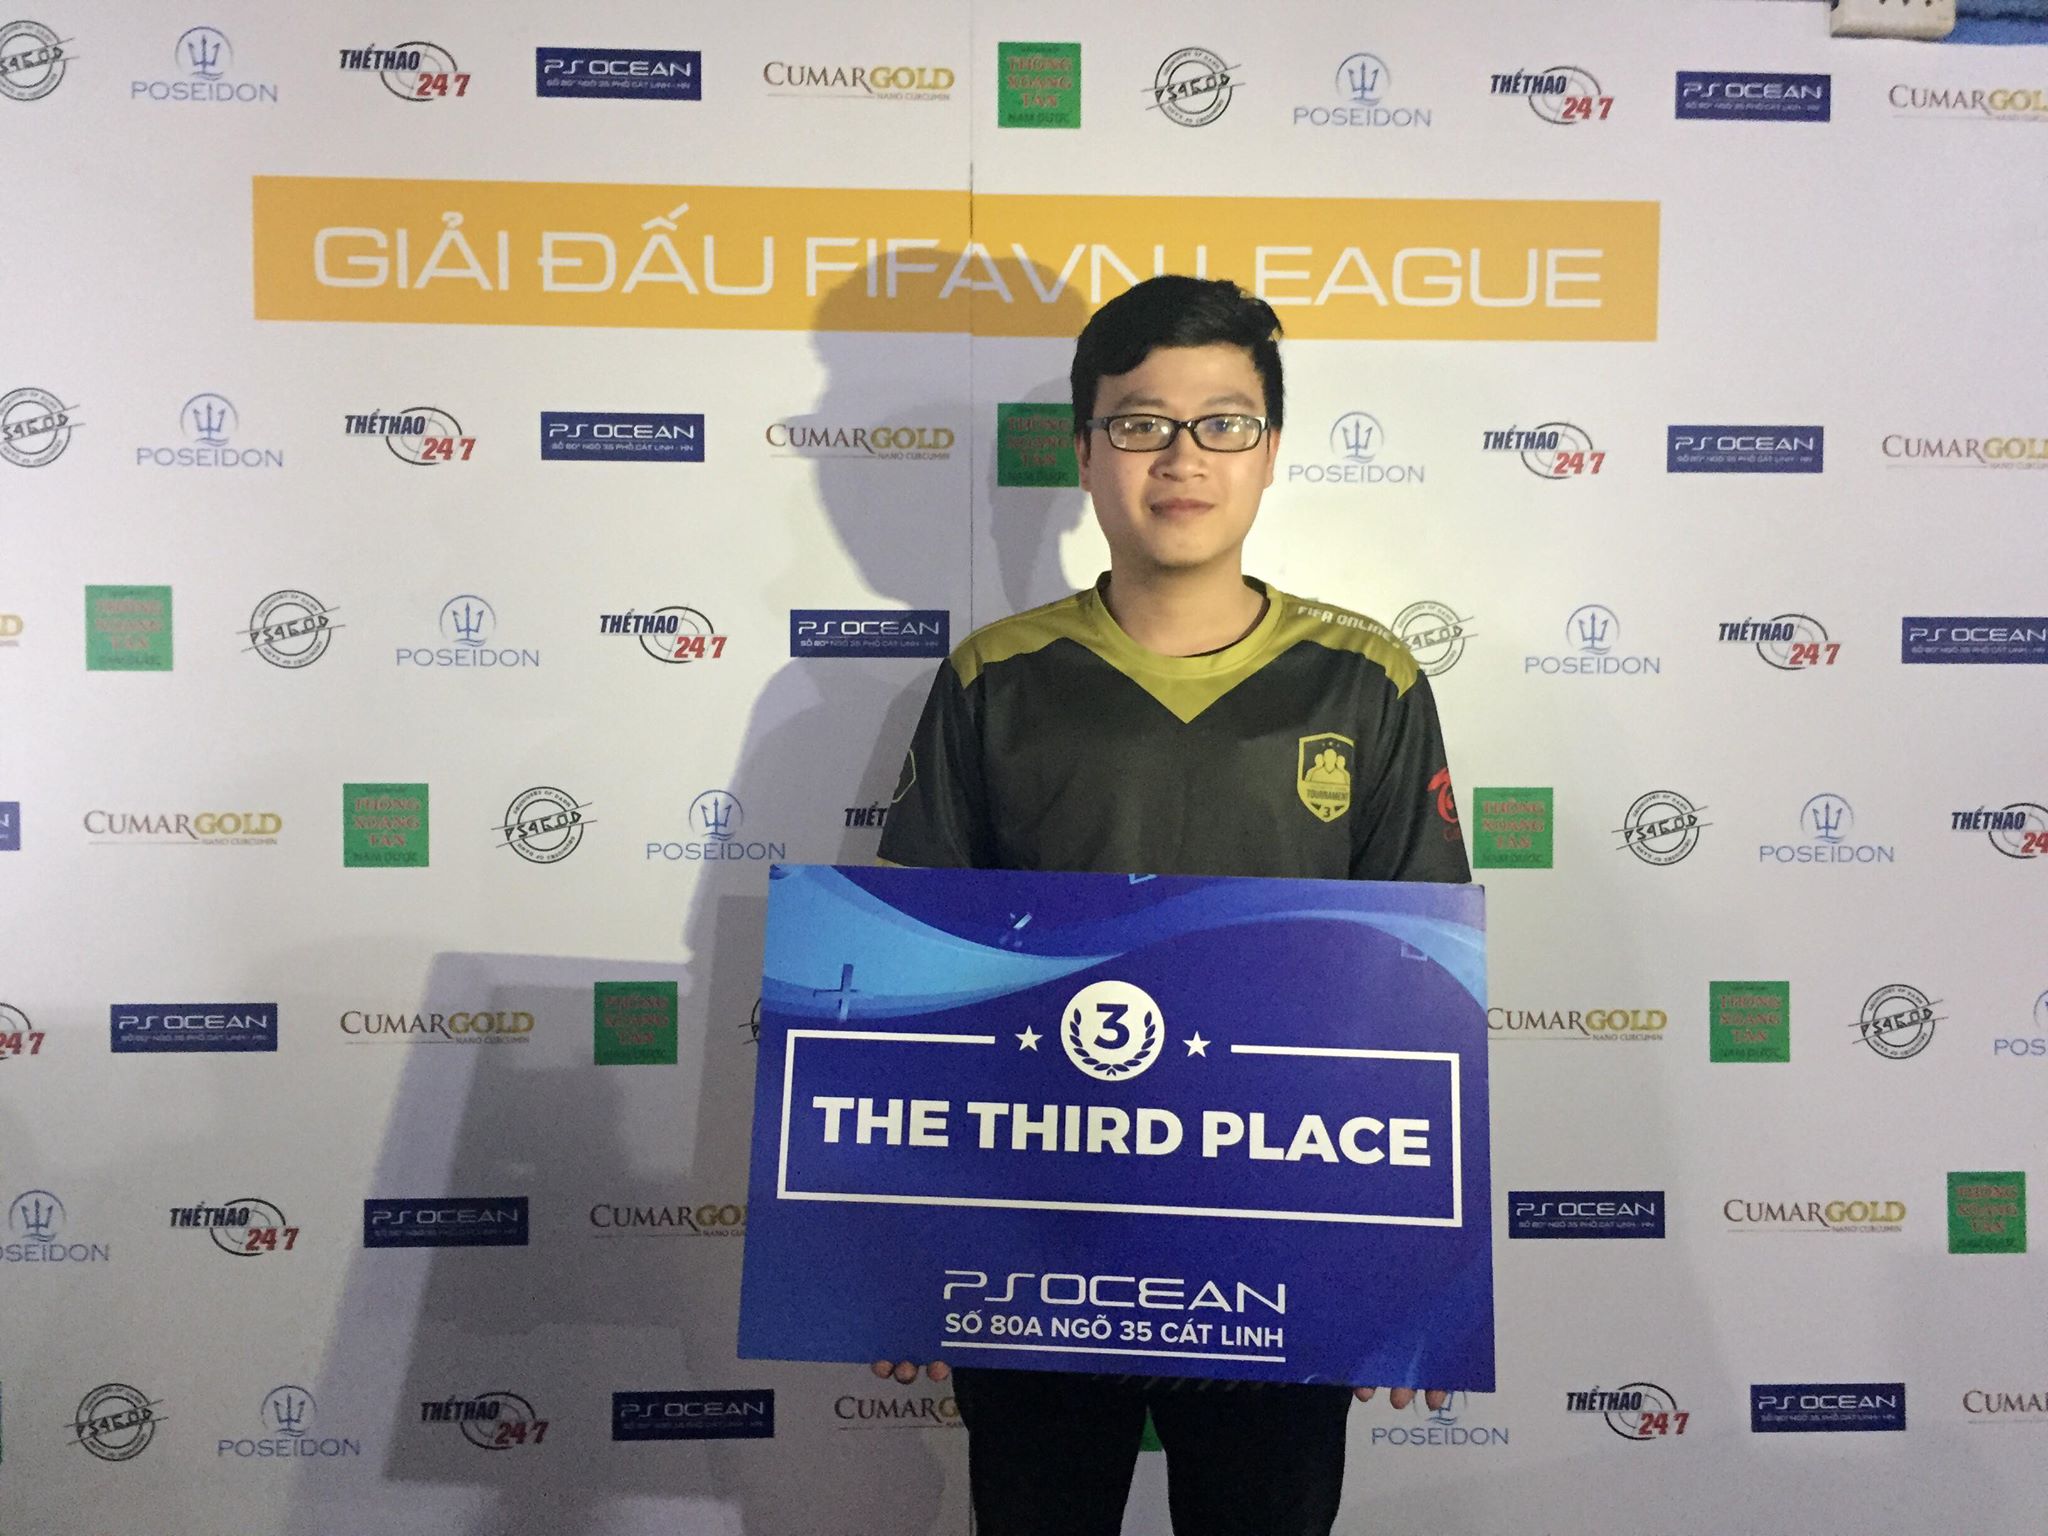 FIFAVN League, Lê Hồng Quyết, Nguyễn Thanh Bình, Lê Quang